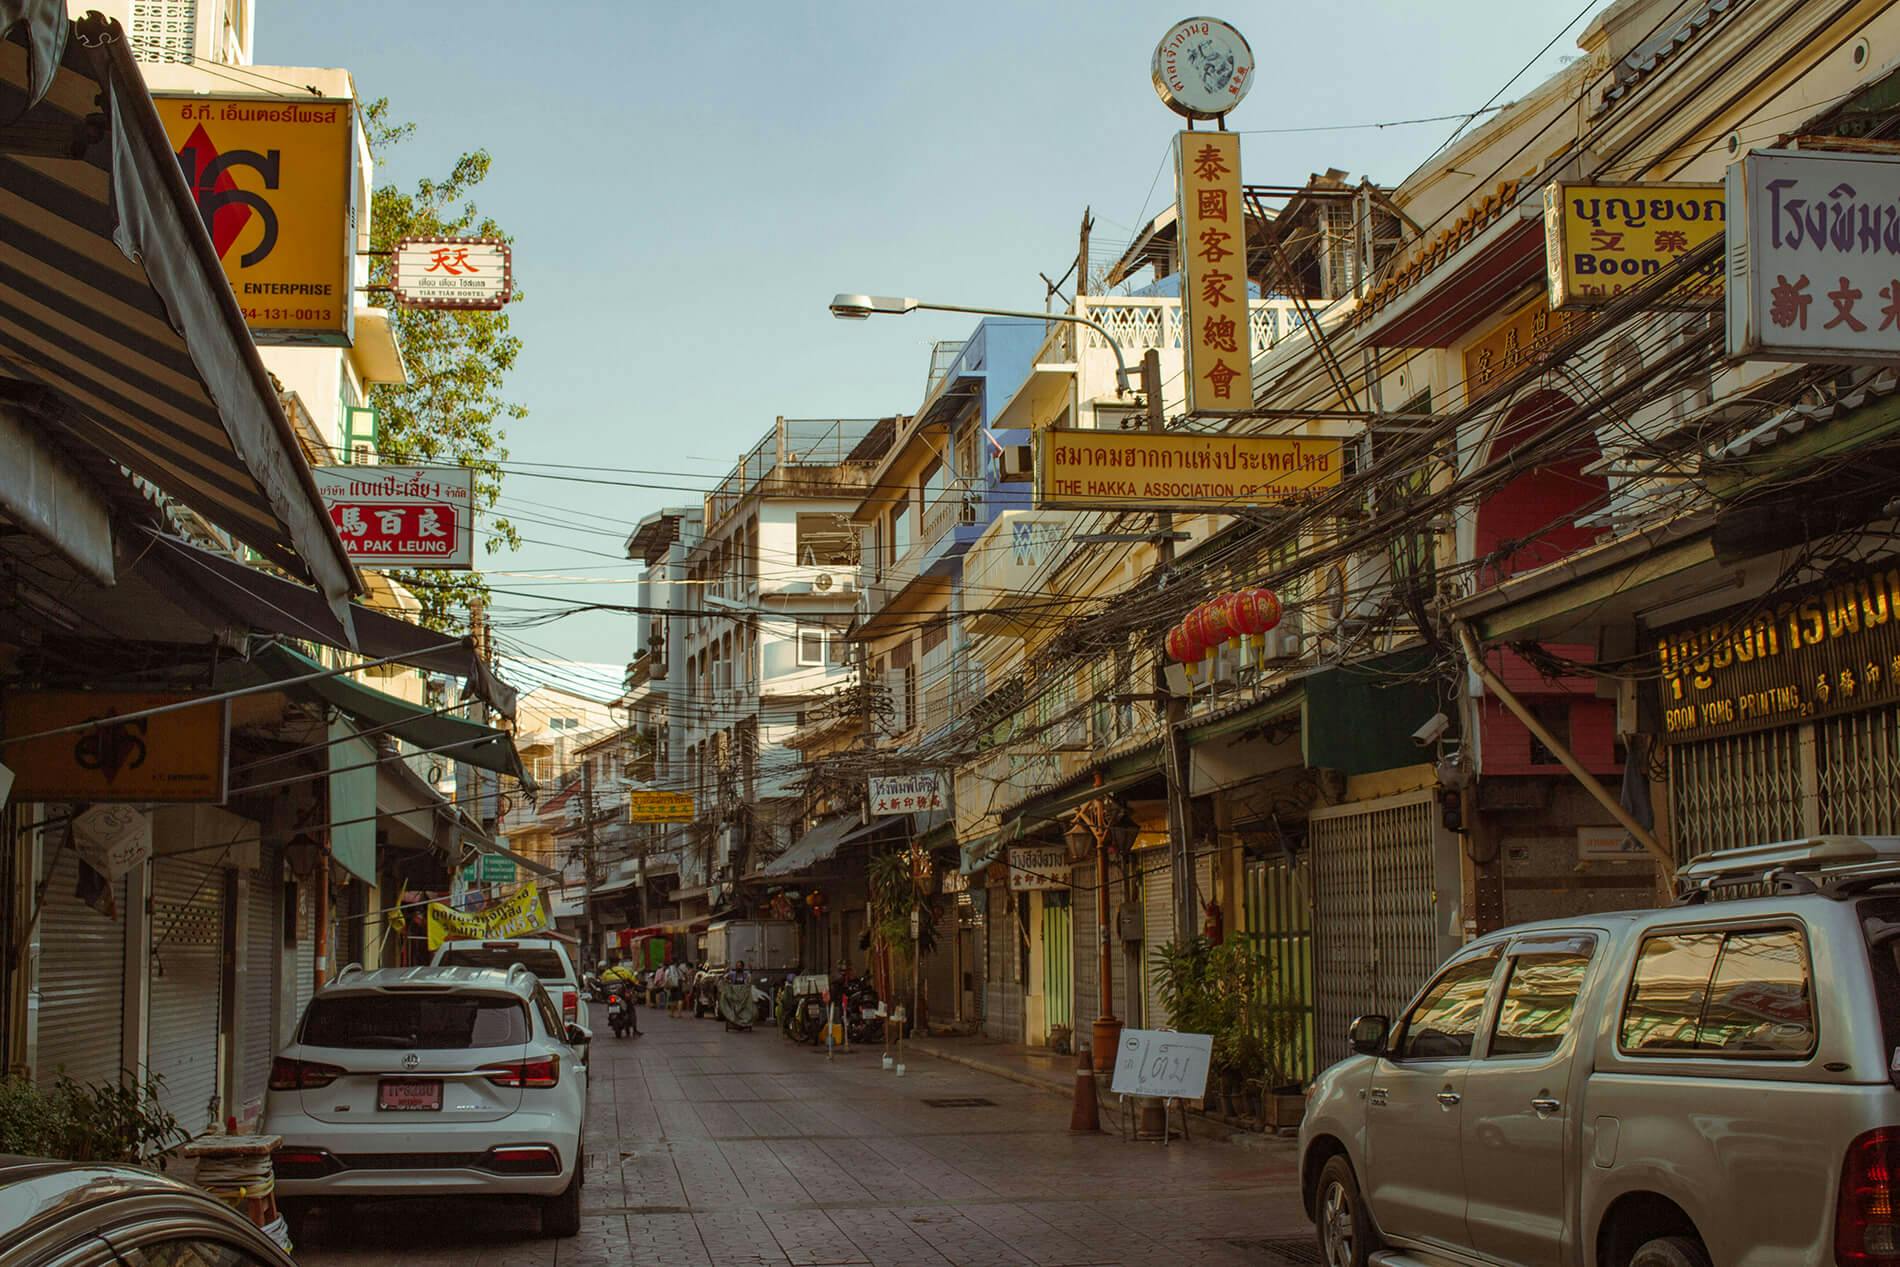 Immagine di Chinatown, Bangkok. Ci sono un paio di macchine per la strada e si vedono molte insegne di negozi. La maggior parte delle insegne sono gialle con il testo scritto in un vivace rosso